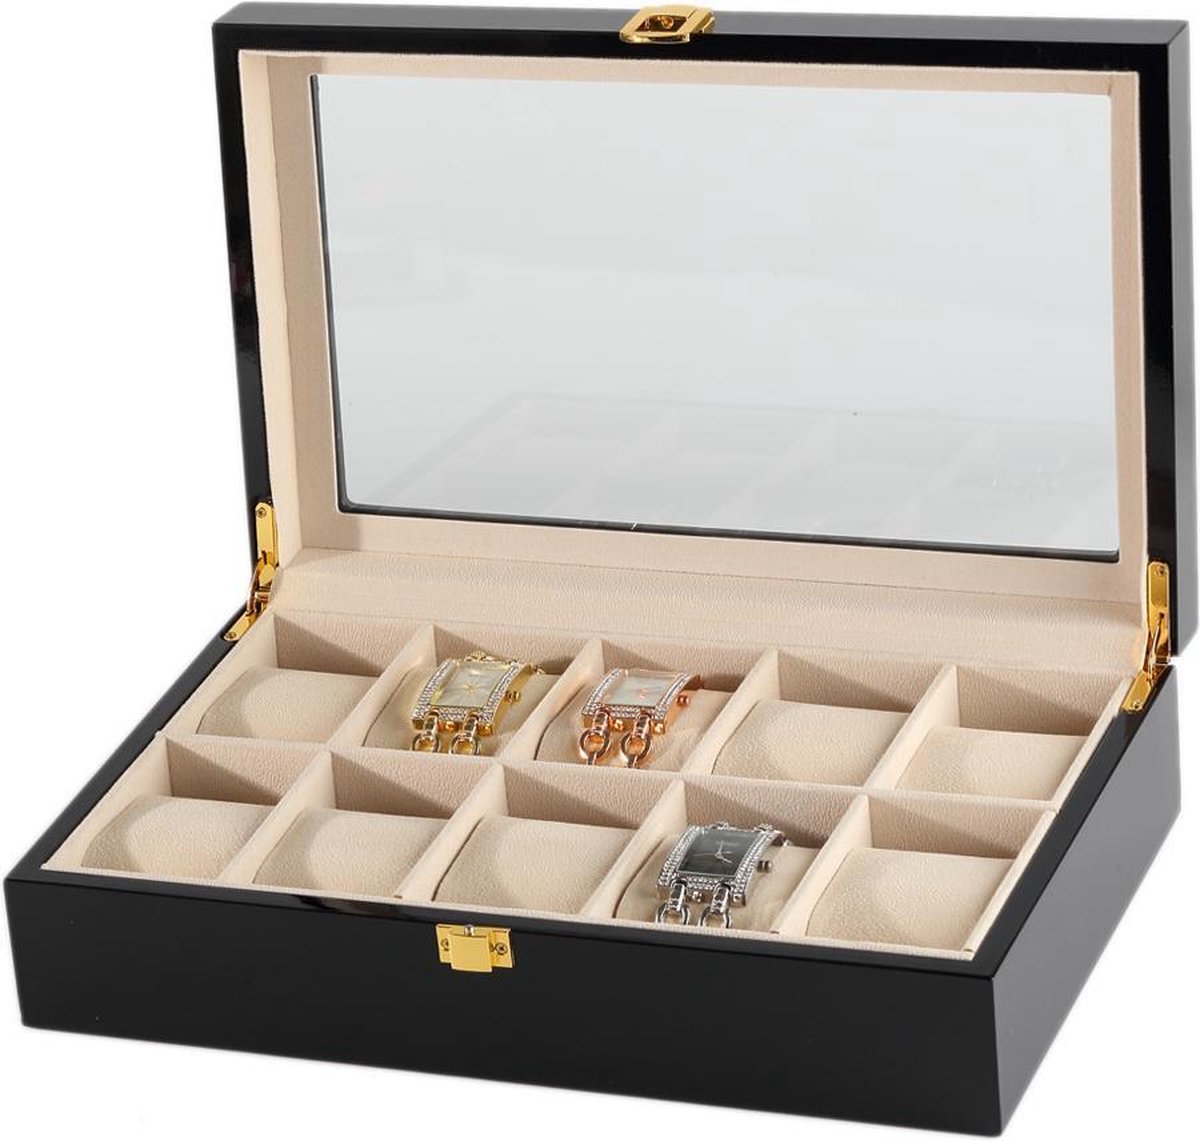 Luxe Horlogedoos - 10 compartimenten met kussentjes - voor mannen en vrouwen horloges - zwart - IMPAQT